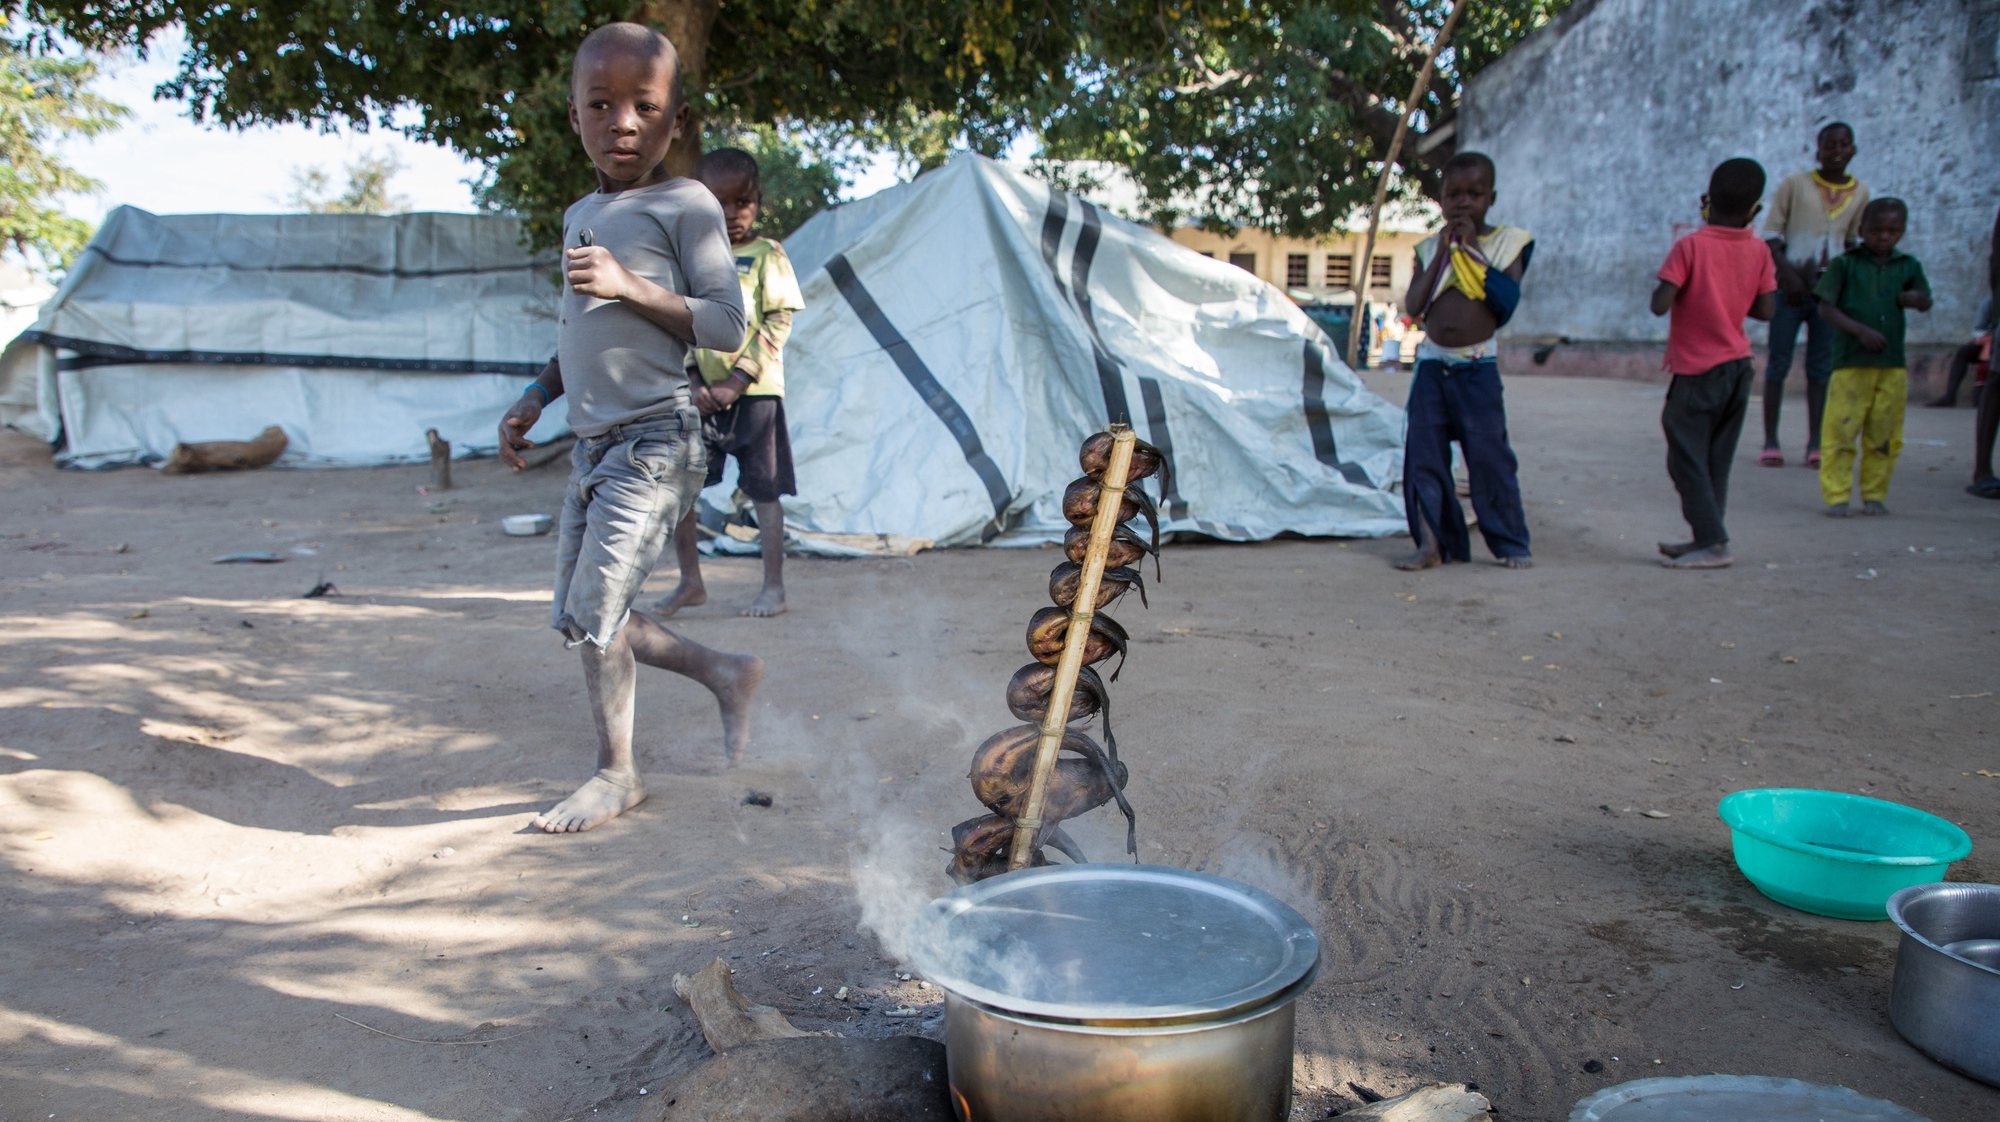 ESPECIAL OBSERVADOR - Crianças na zona de acomodação de deslocados em Manono, Metuge, povoação que acolhe entre a 10 a 12 mil deslocados em centenas de tendas distribuídas por cinco campos de acolhimento de população em fuga dos ataques armados em Cabo Delgado, Moçambique, 22 de julho de 2020. Os ataques de grupos armados insurgentes intensificaram-se desde o início do ano e transformaram-se em ocupação de vilas que duraram mais que um dia. Em dois anos e meio de ataques (desde outubro de 2017) já morreram pelo menos mil pessoas, entre civis, rebeldes e militares moçambicanos. RICARDO FRANCO/LUSA